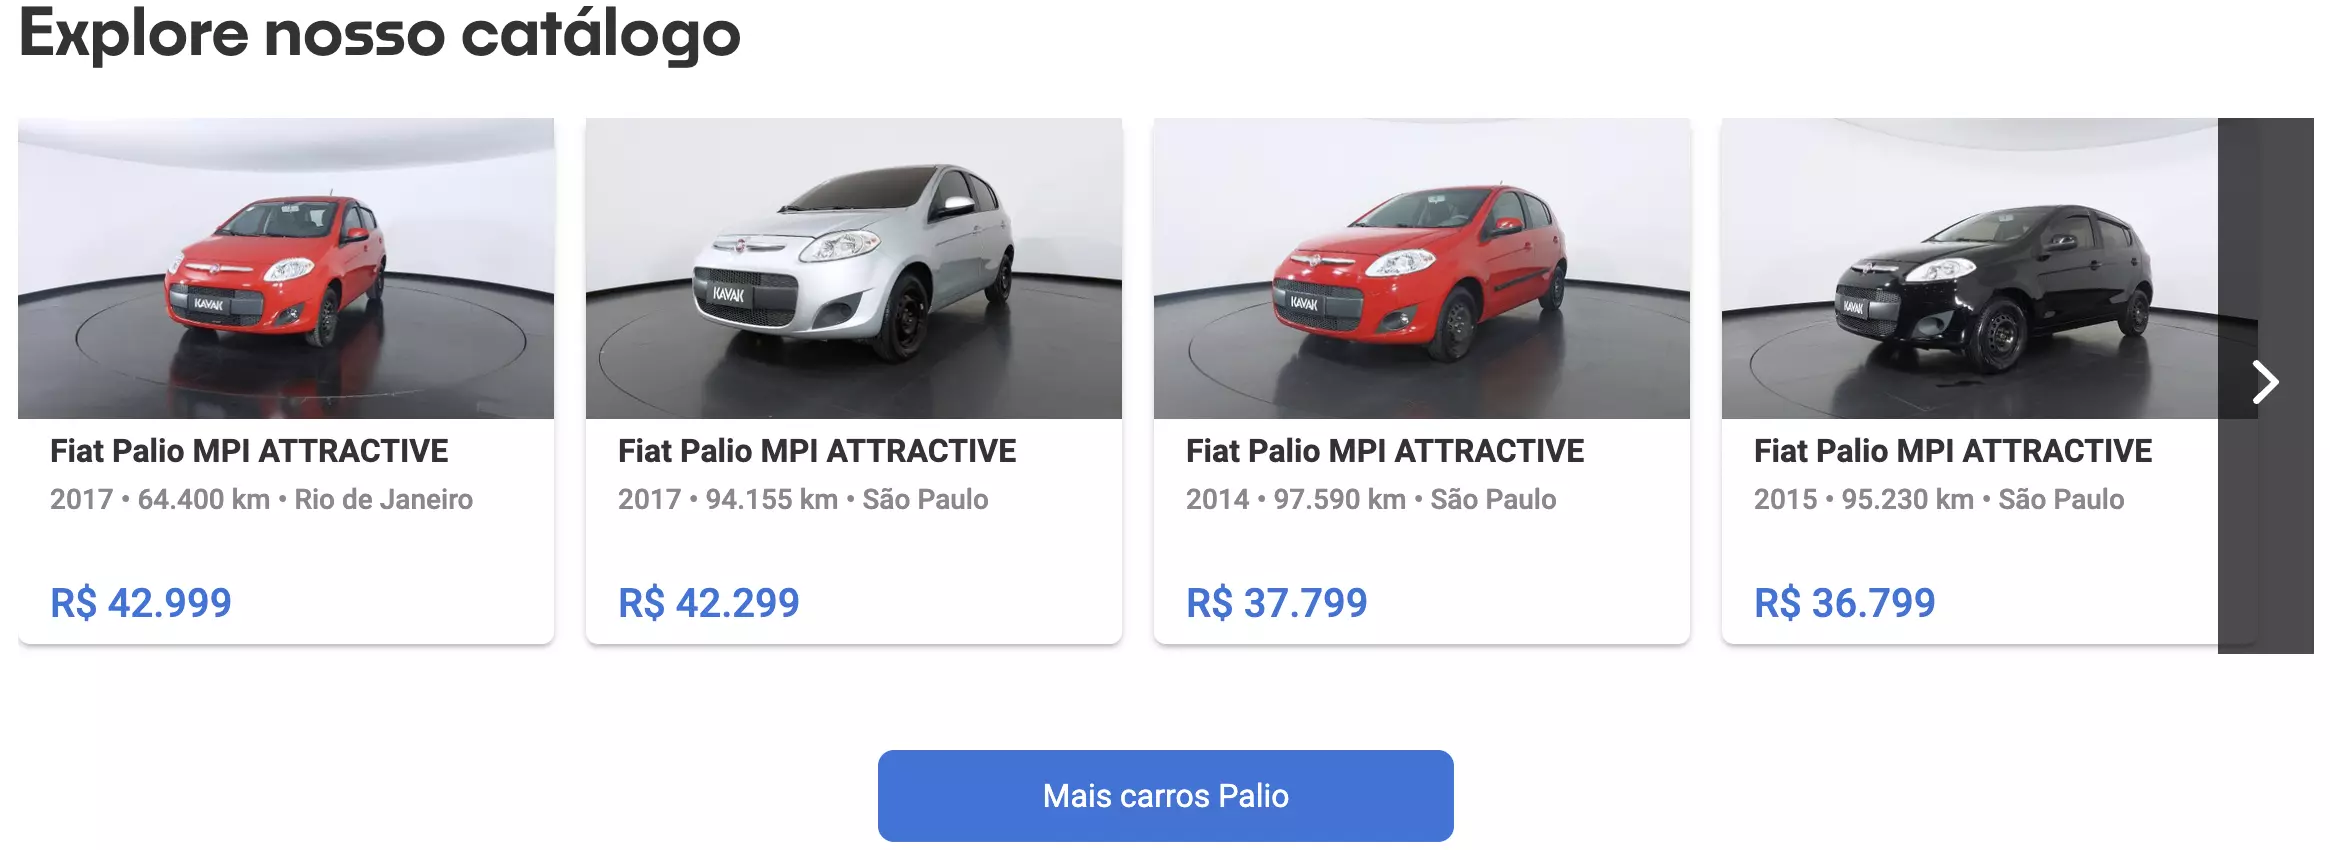 Fiat Palio Attractive à venda